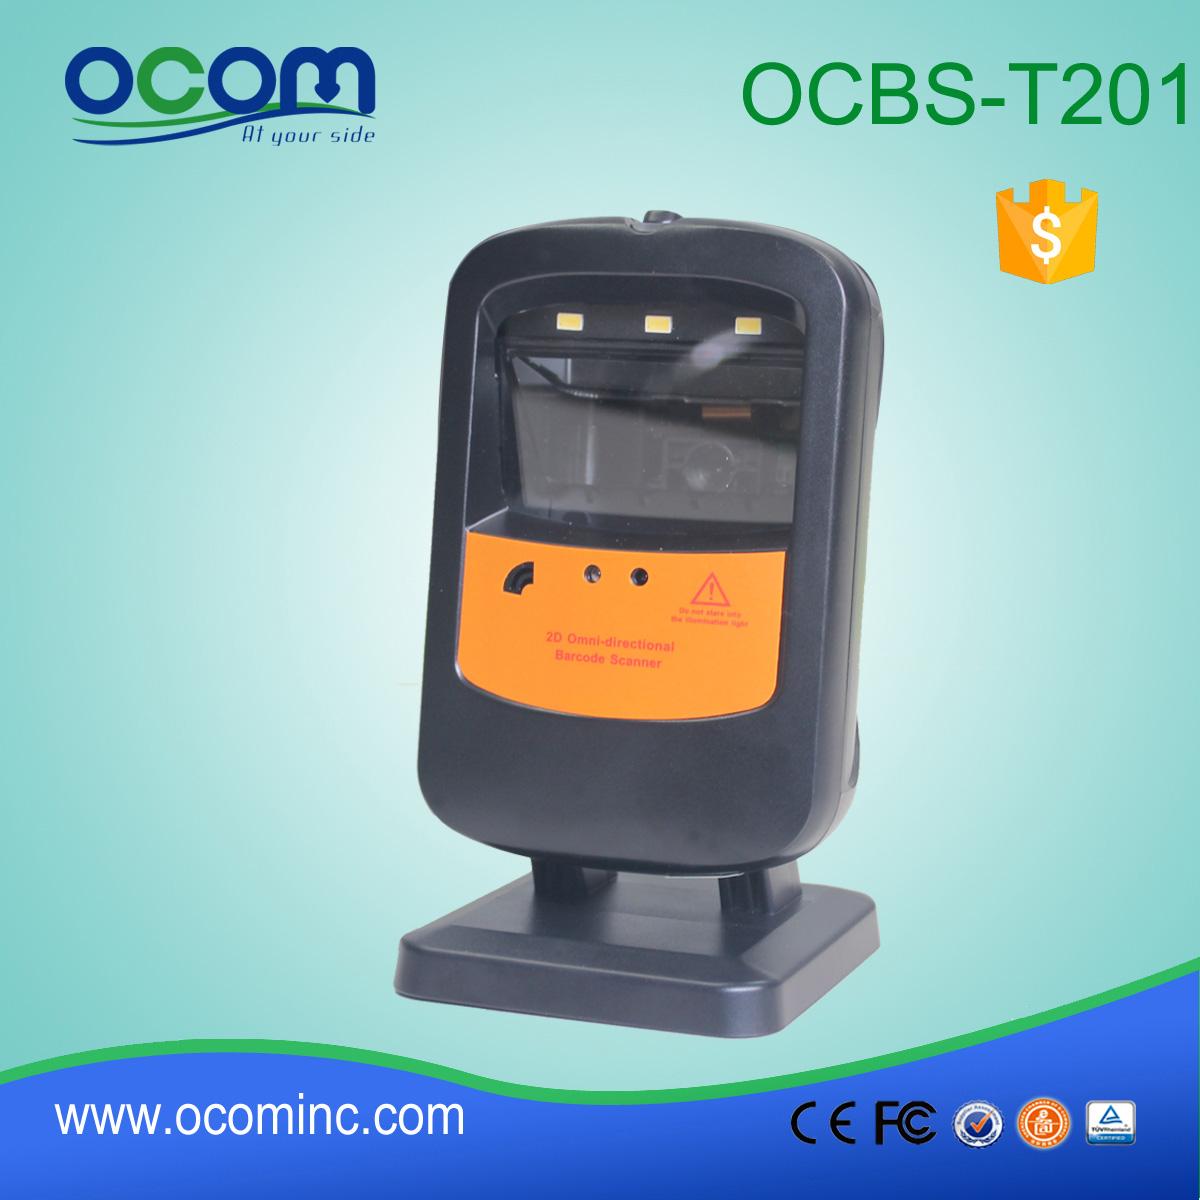 二维全方位自动图像激光条码扫描器 OCBS-T201